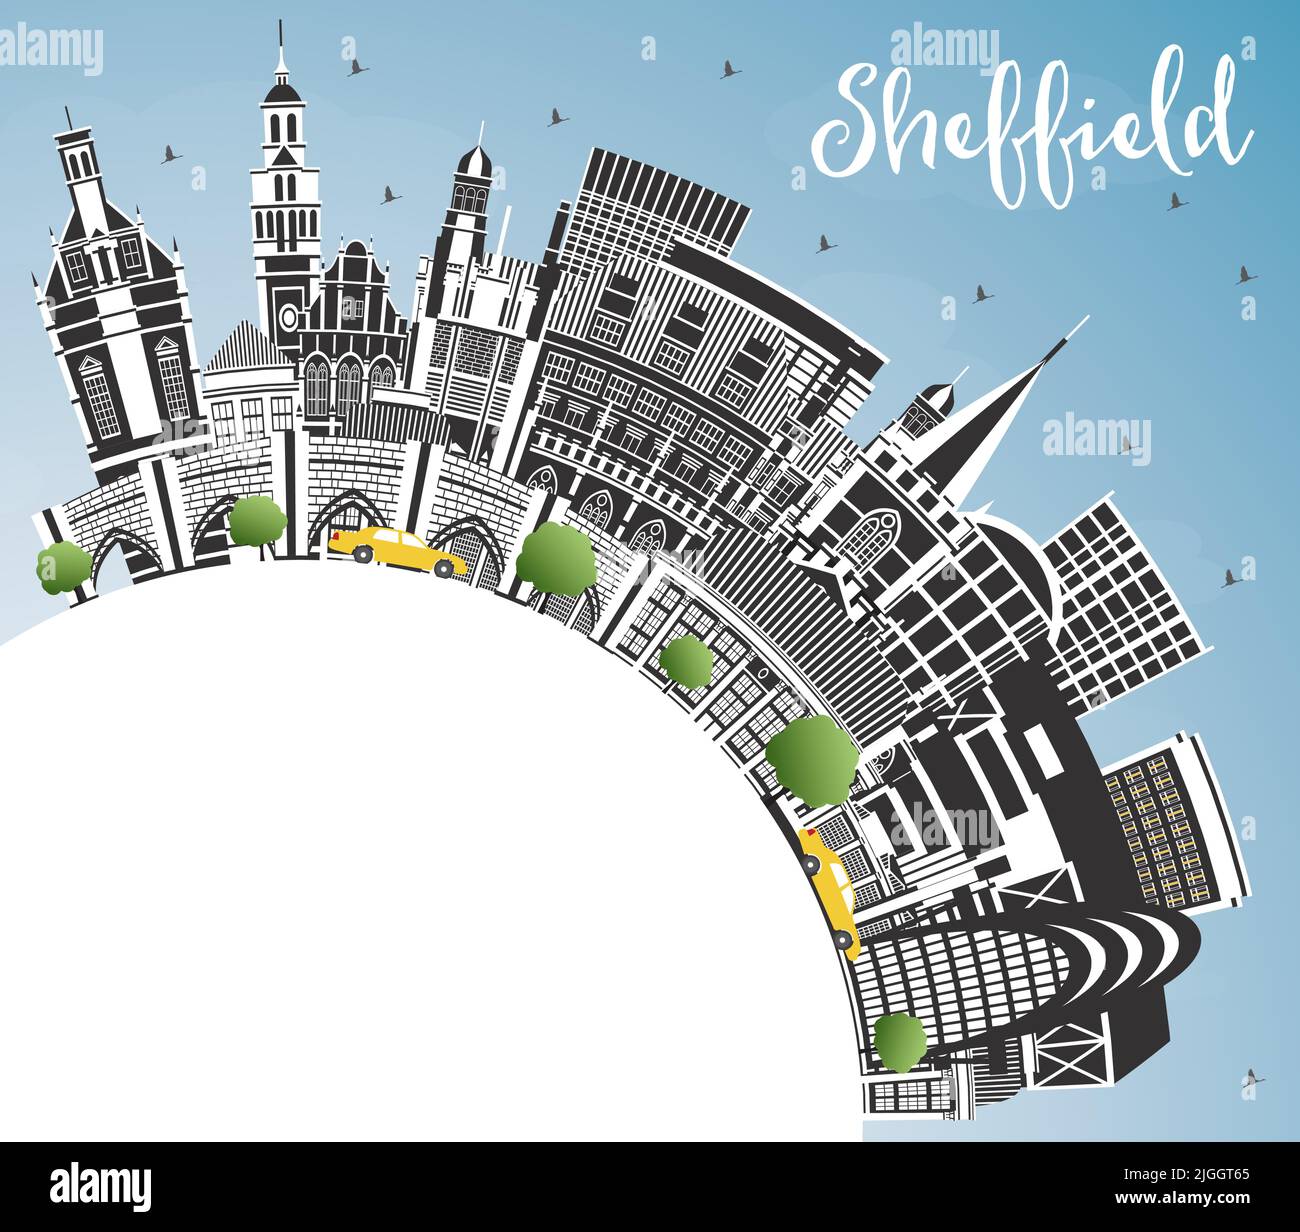 Skyline von Sheffield UK City mit farbigen Gebäuden, blauem Himmel und Kopierraum. Vektorgrafik. Stadtbild von Sheffield South Yorkshire mit Wahrzeichen. Stock Vektor